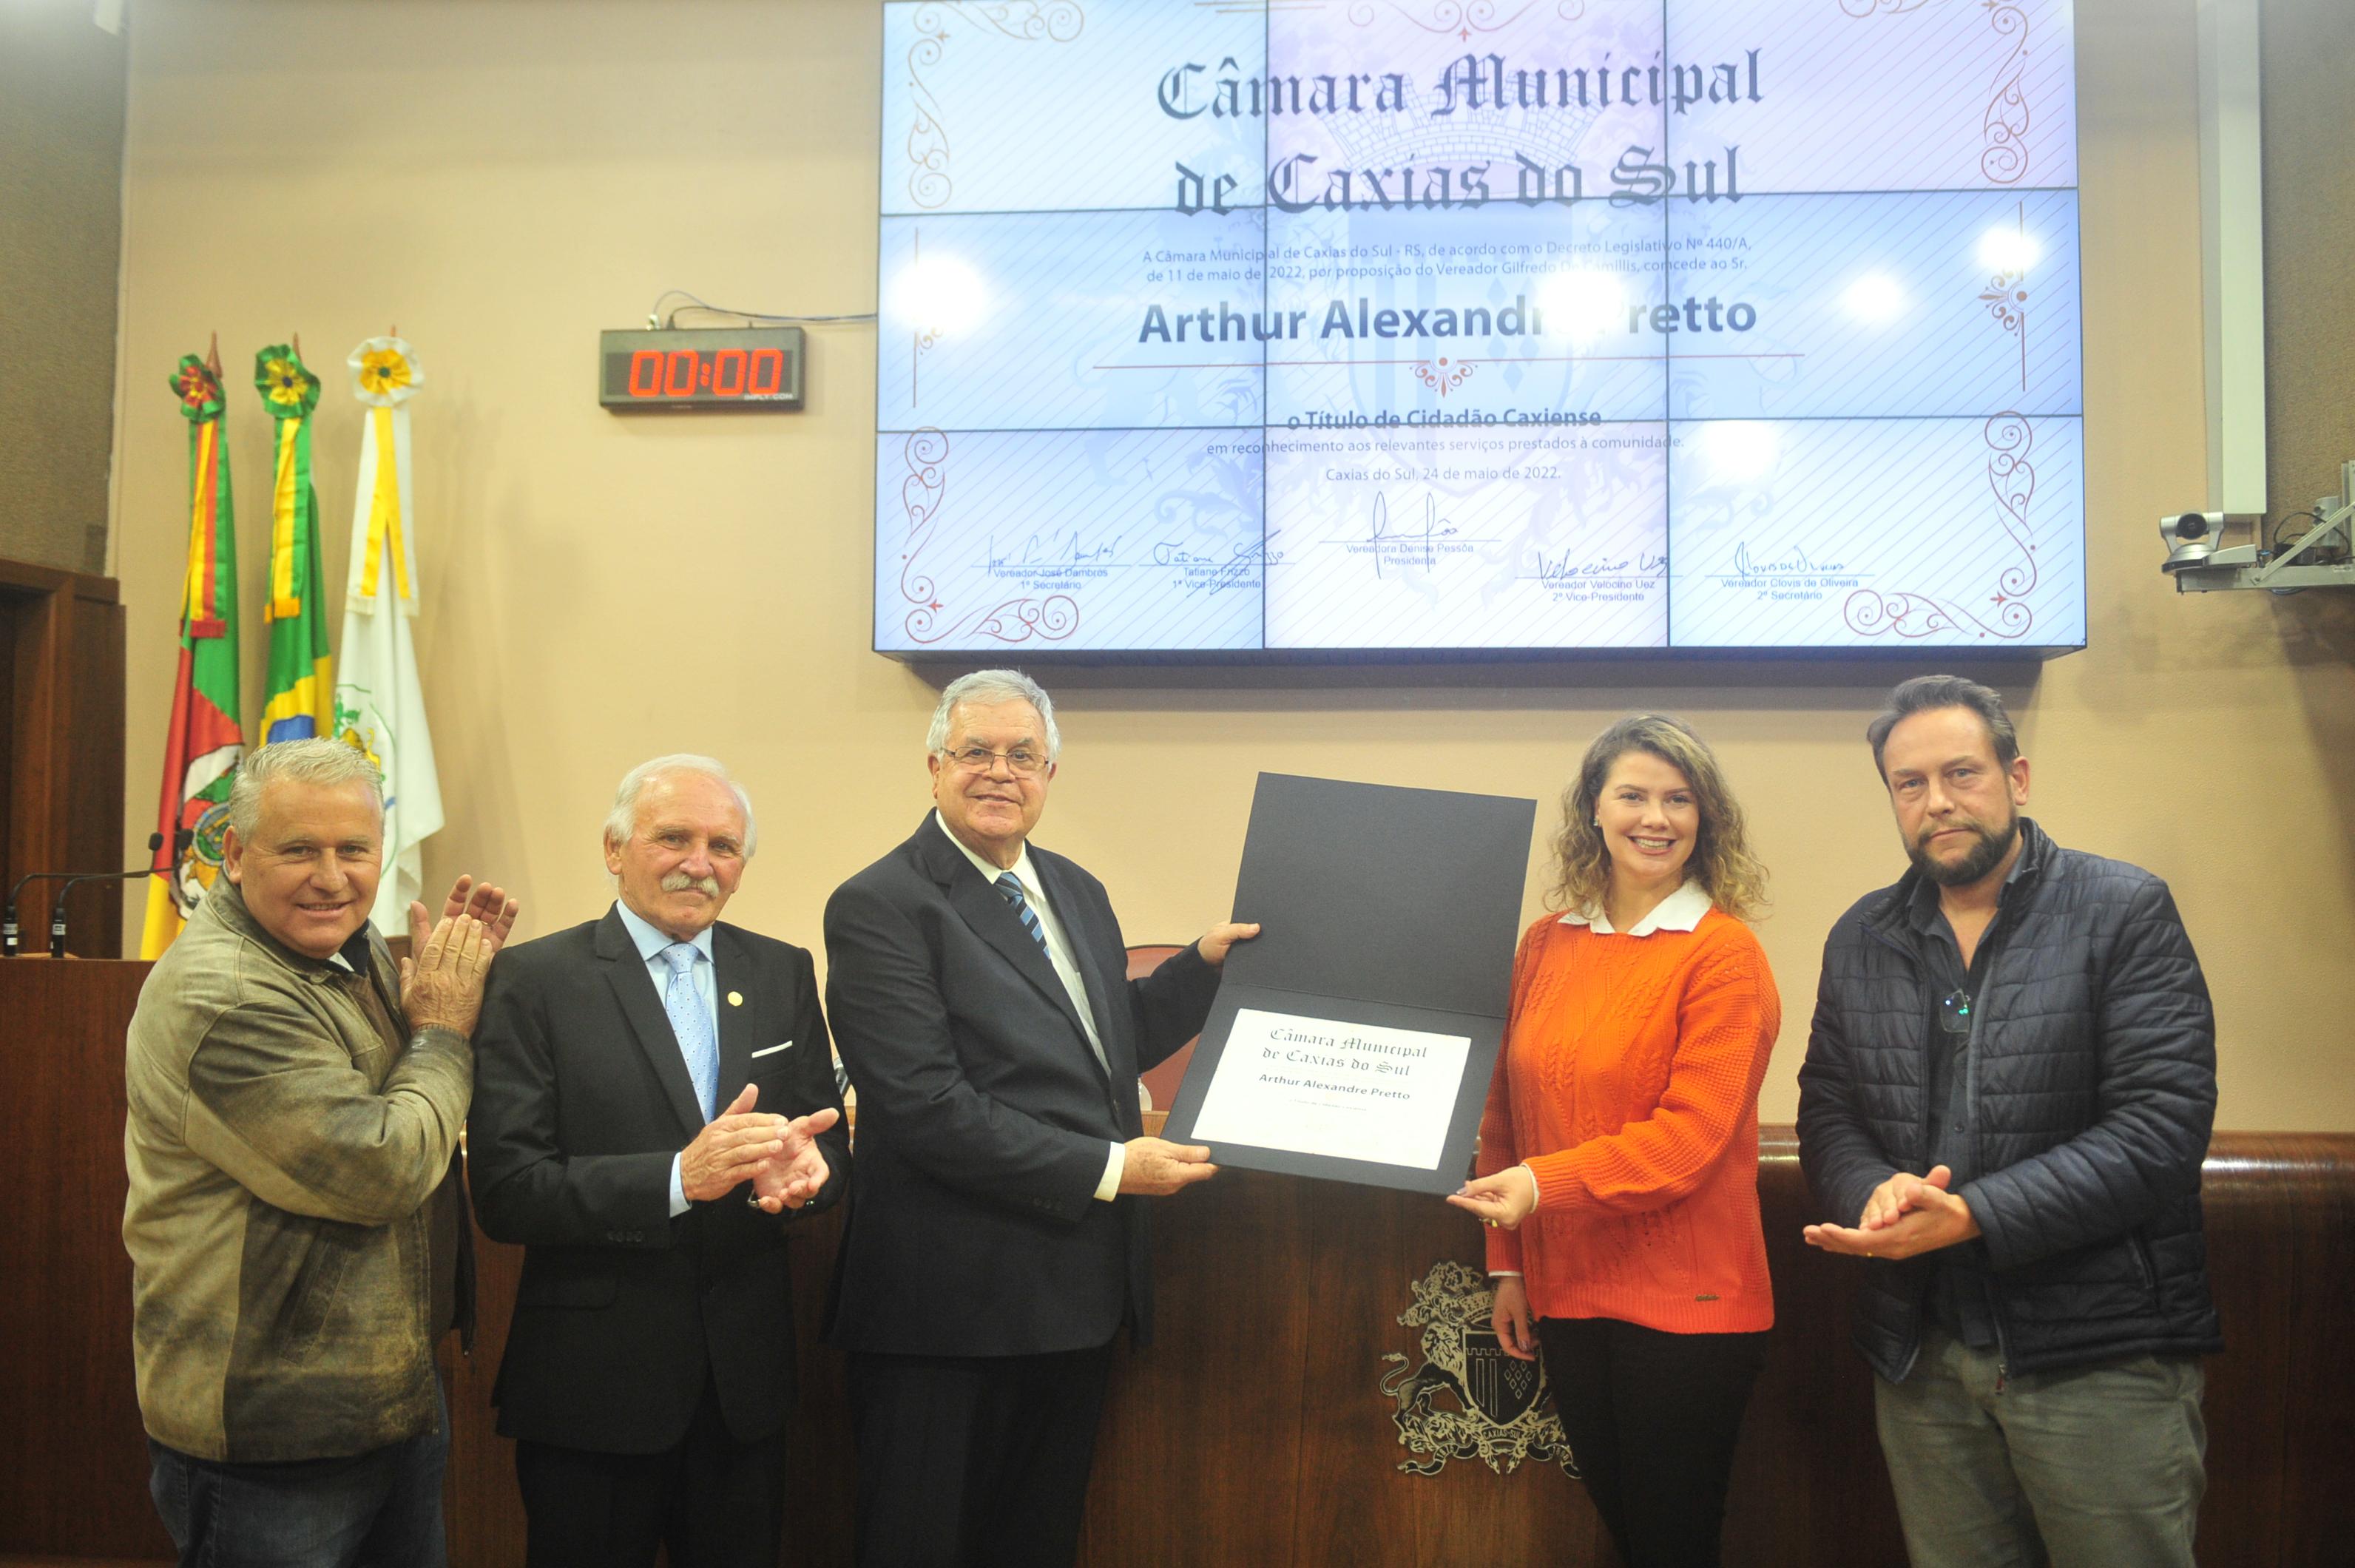 Leia mais sobre Arthur Alexandre Pretto é agraciado com o título de Cidadão Caxiense